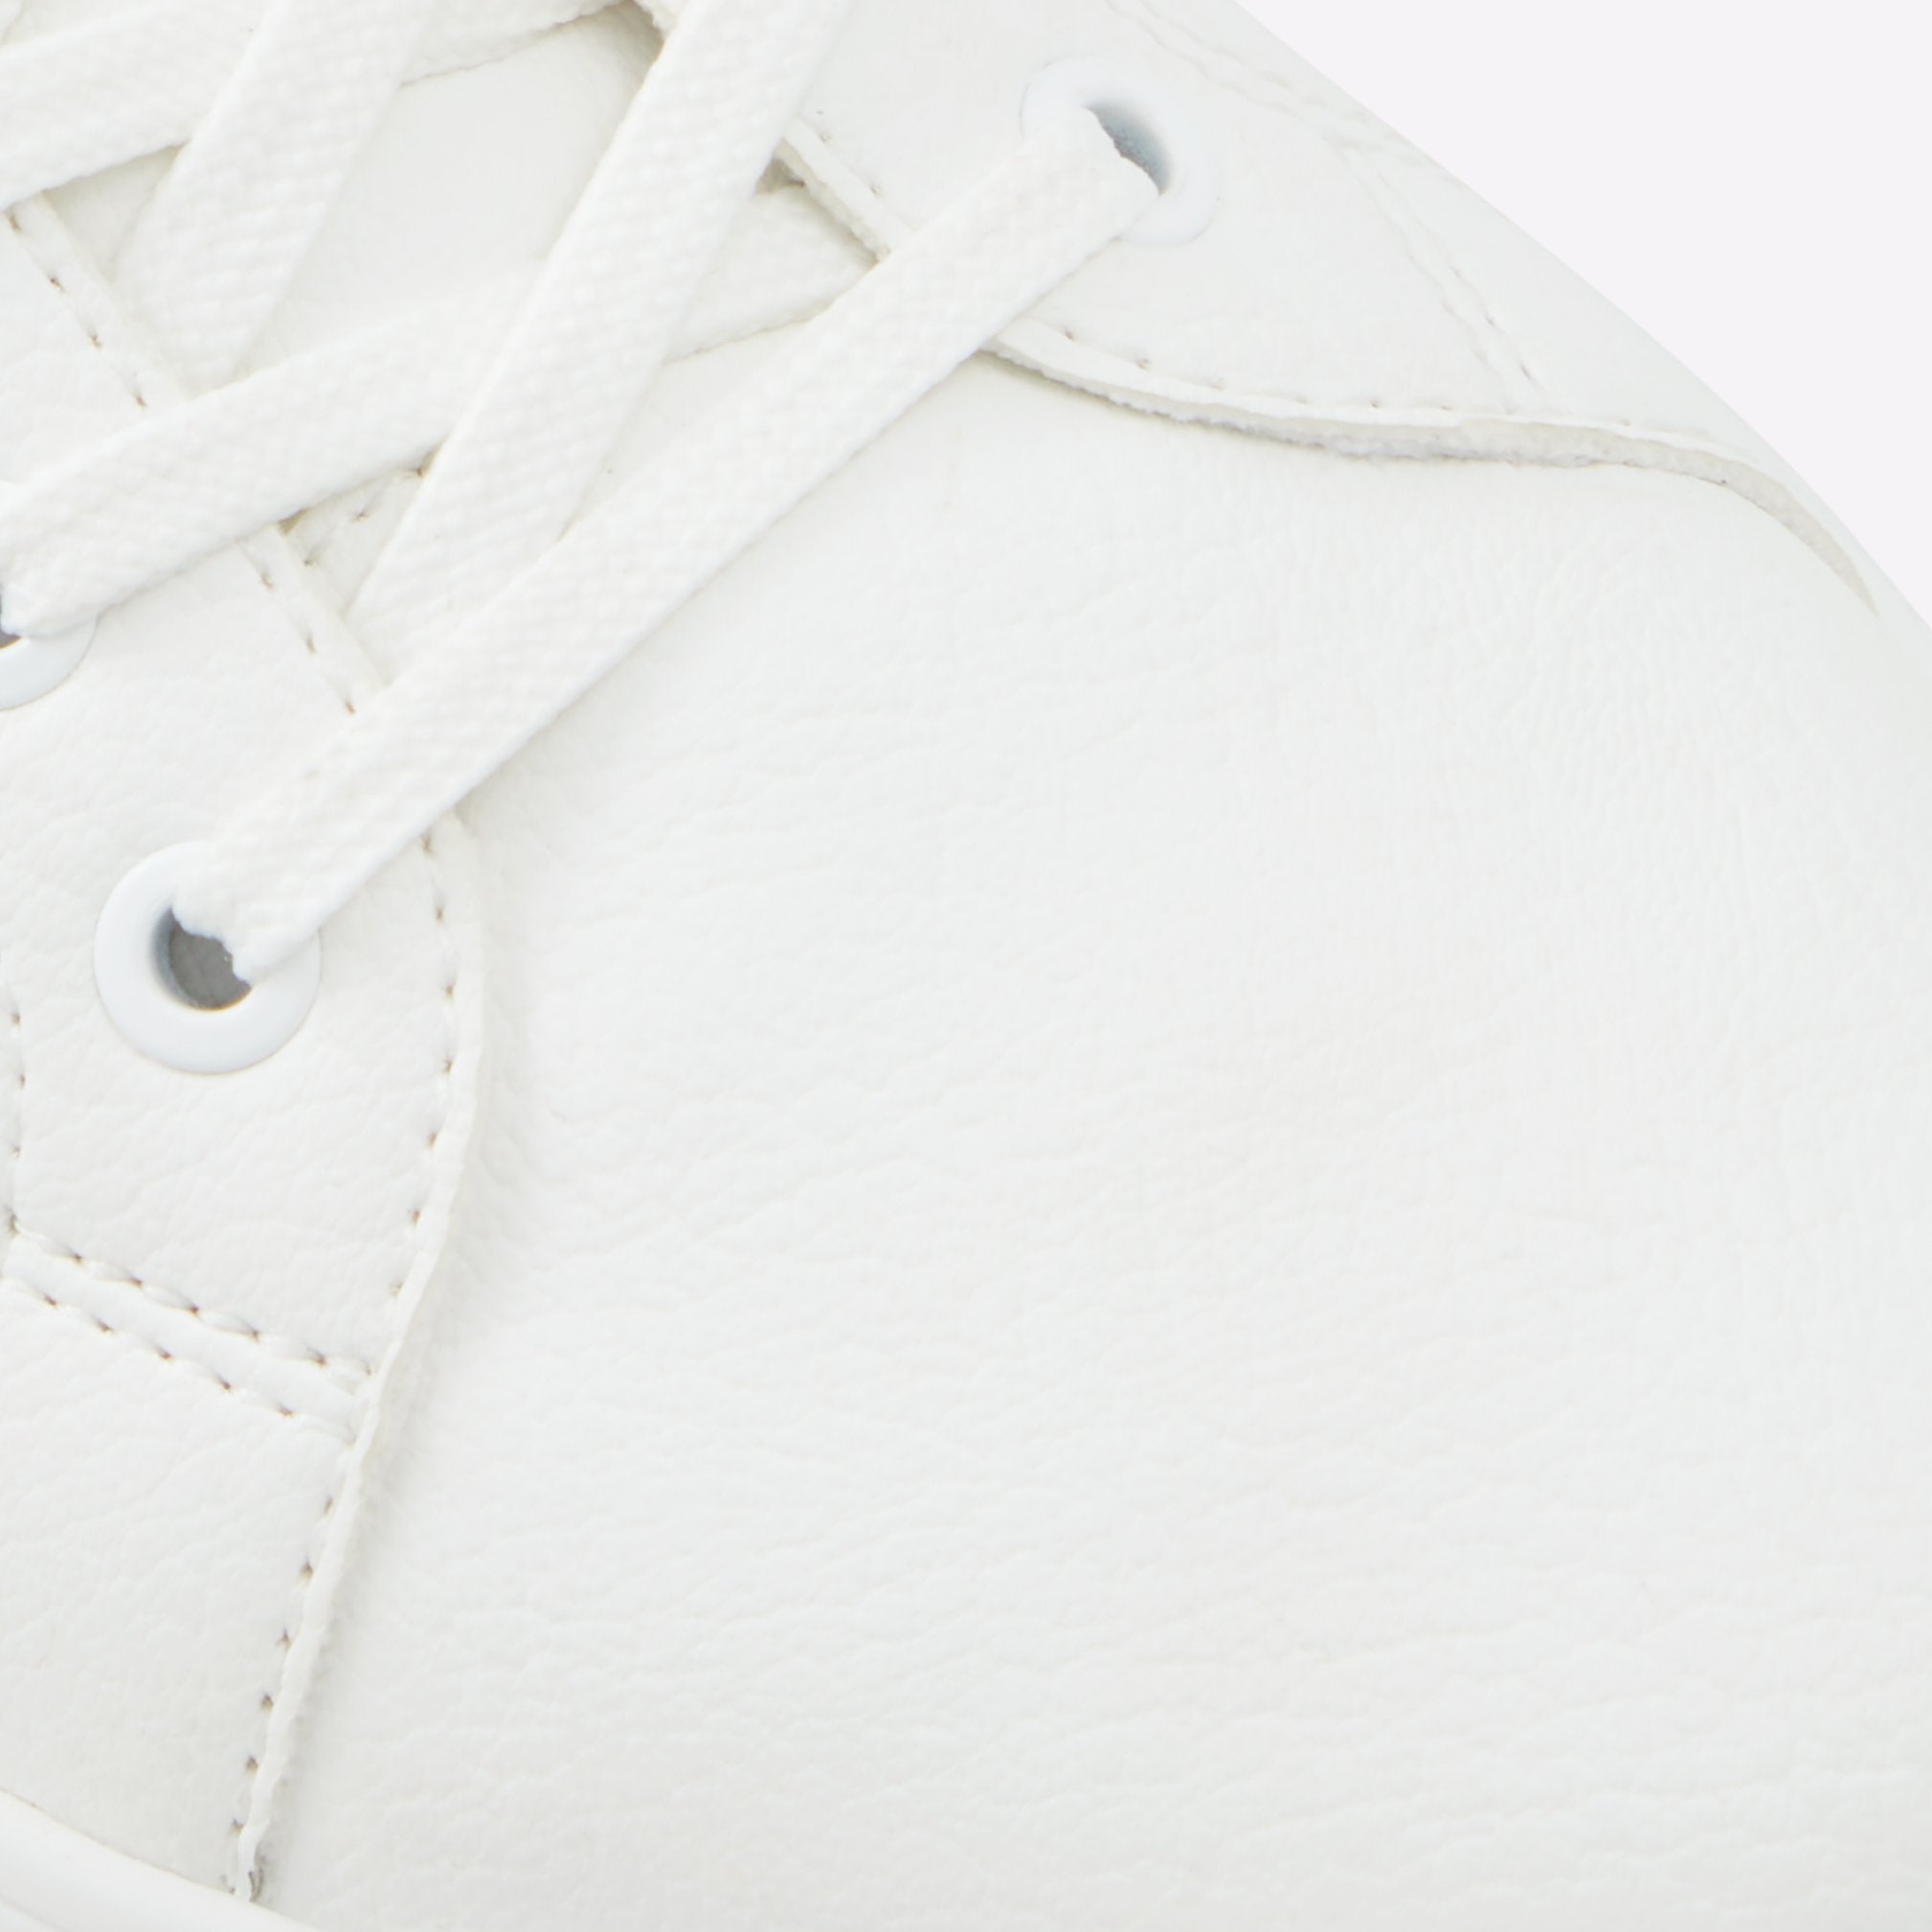 Koisenn Men Shoes - White - ALDO KSA